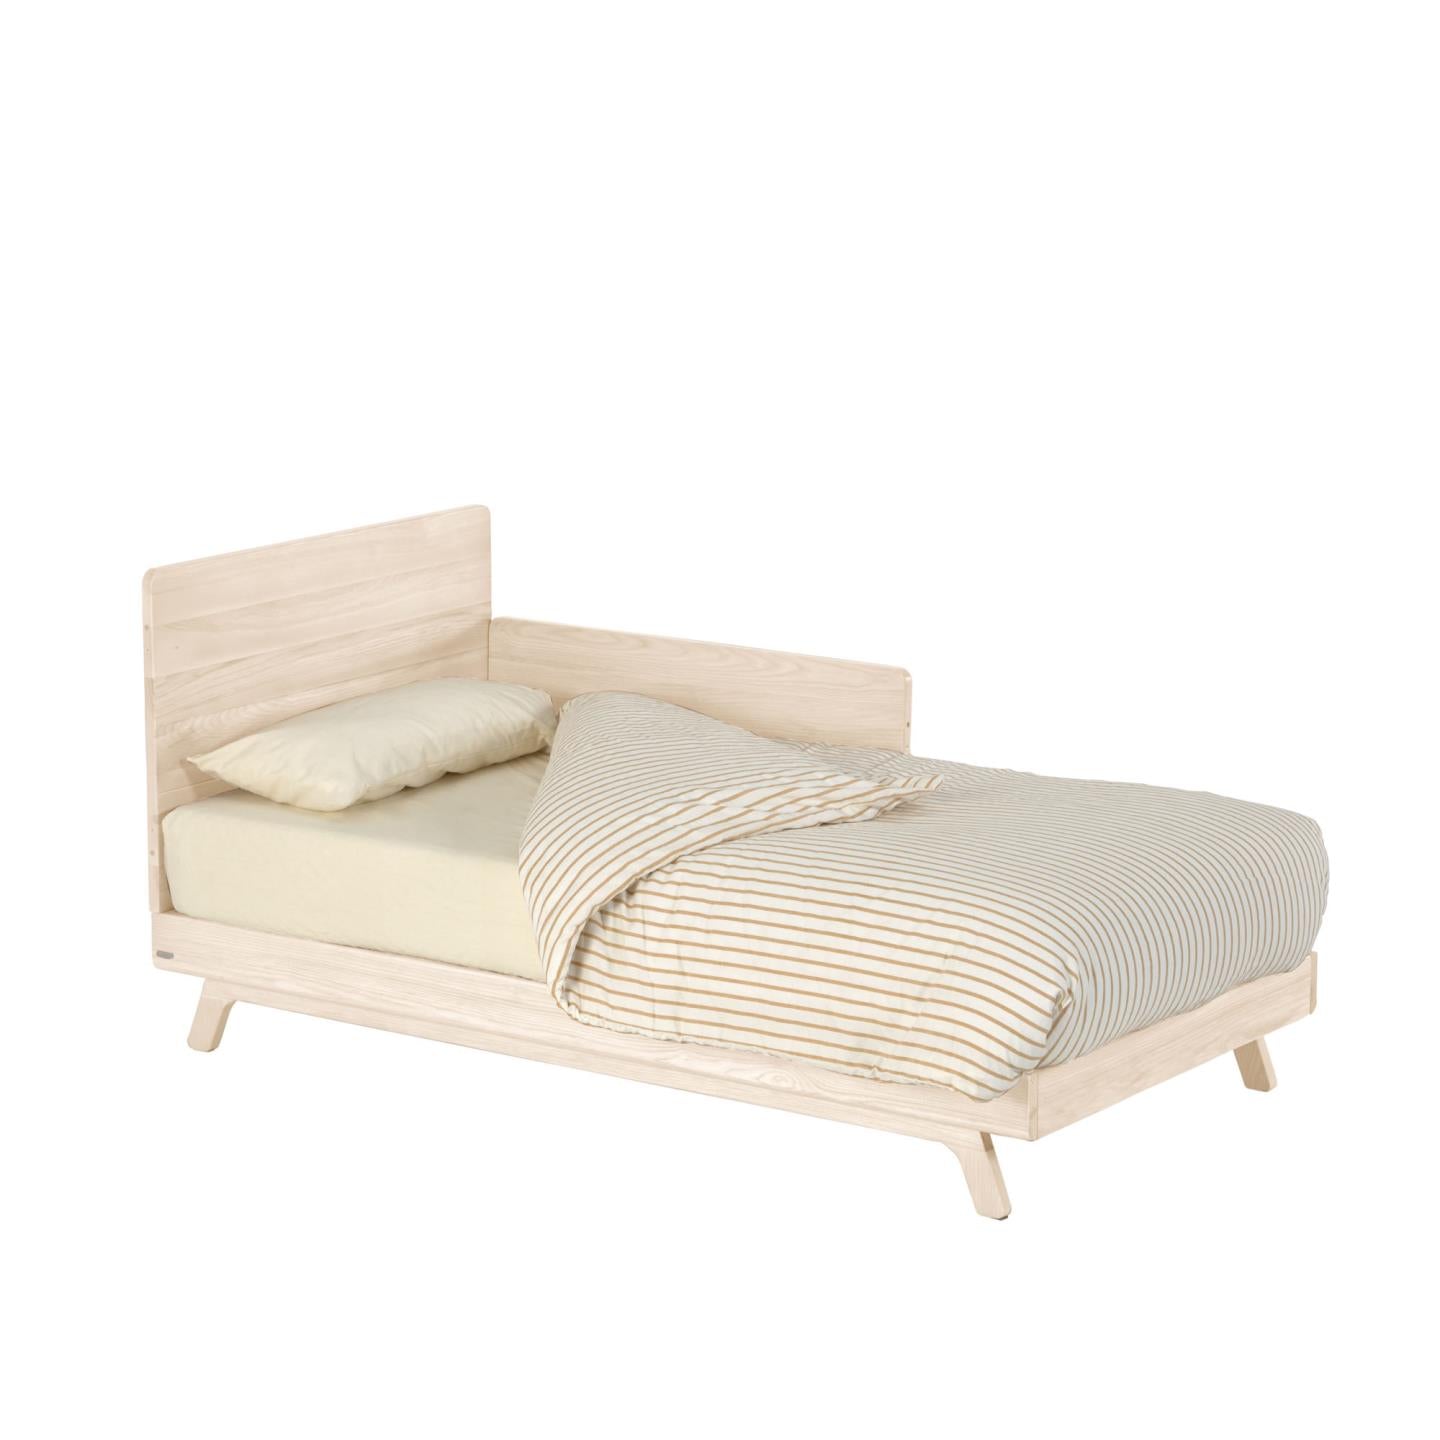 Maralis solid ash cot bed 70 x 140 cm